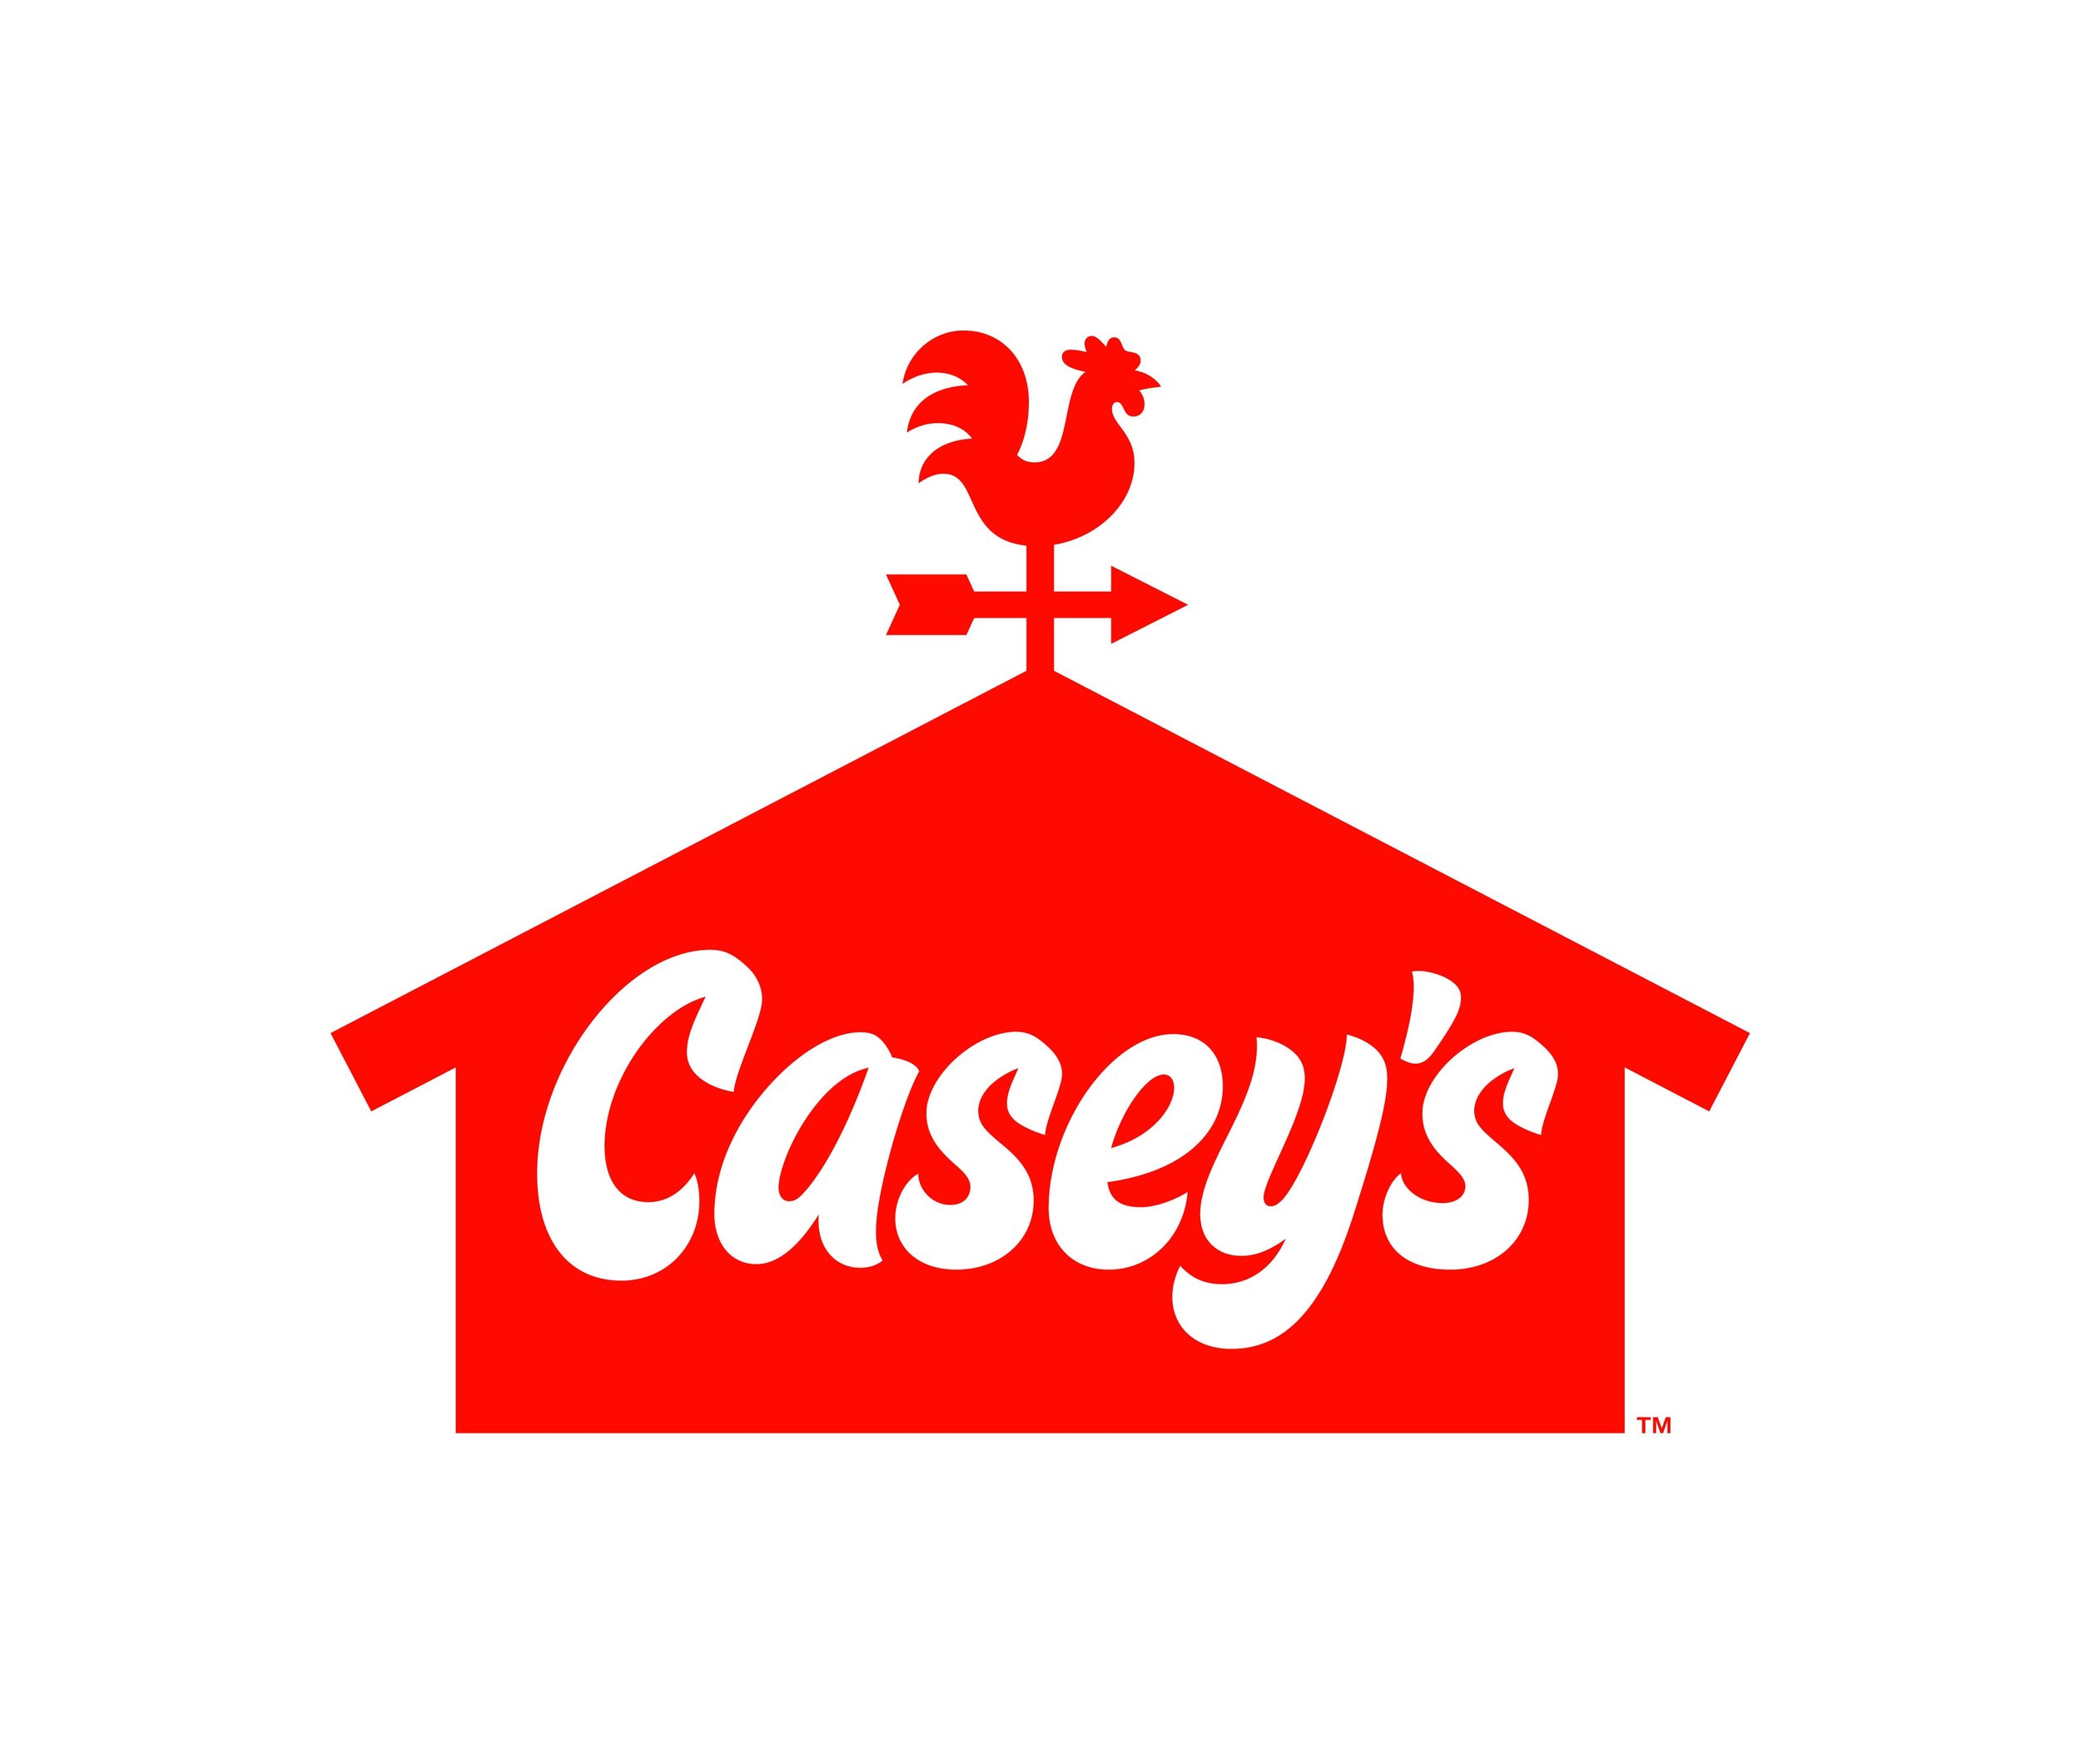 caseys logo.jpeg